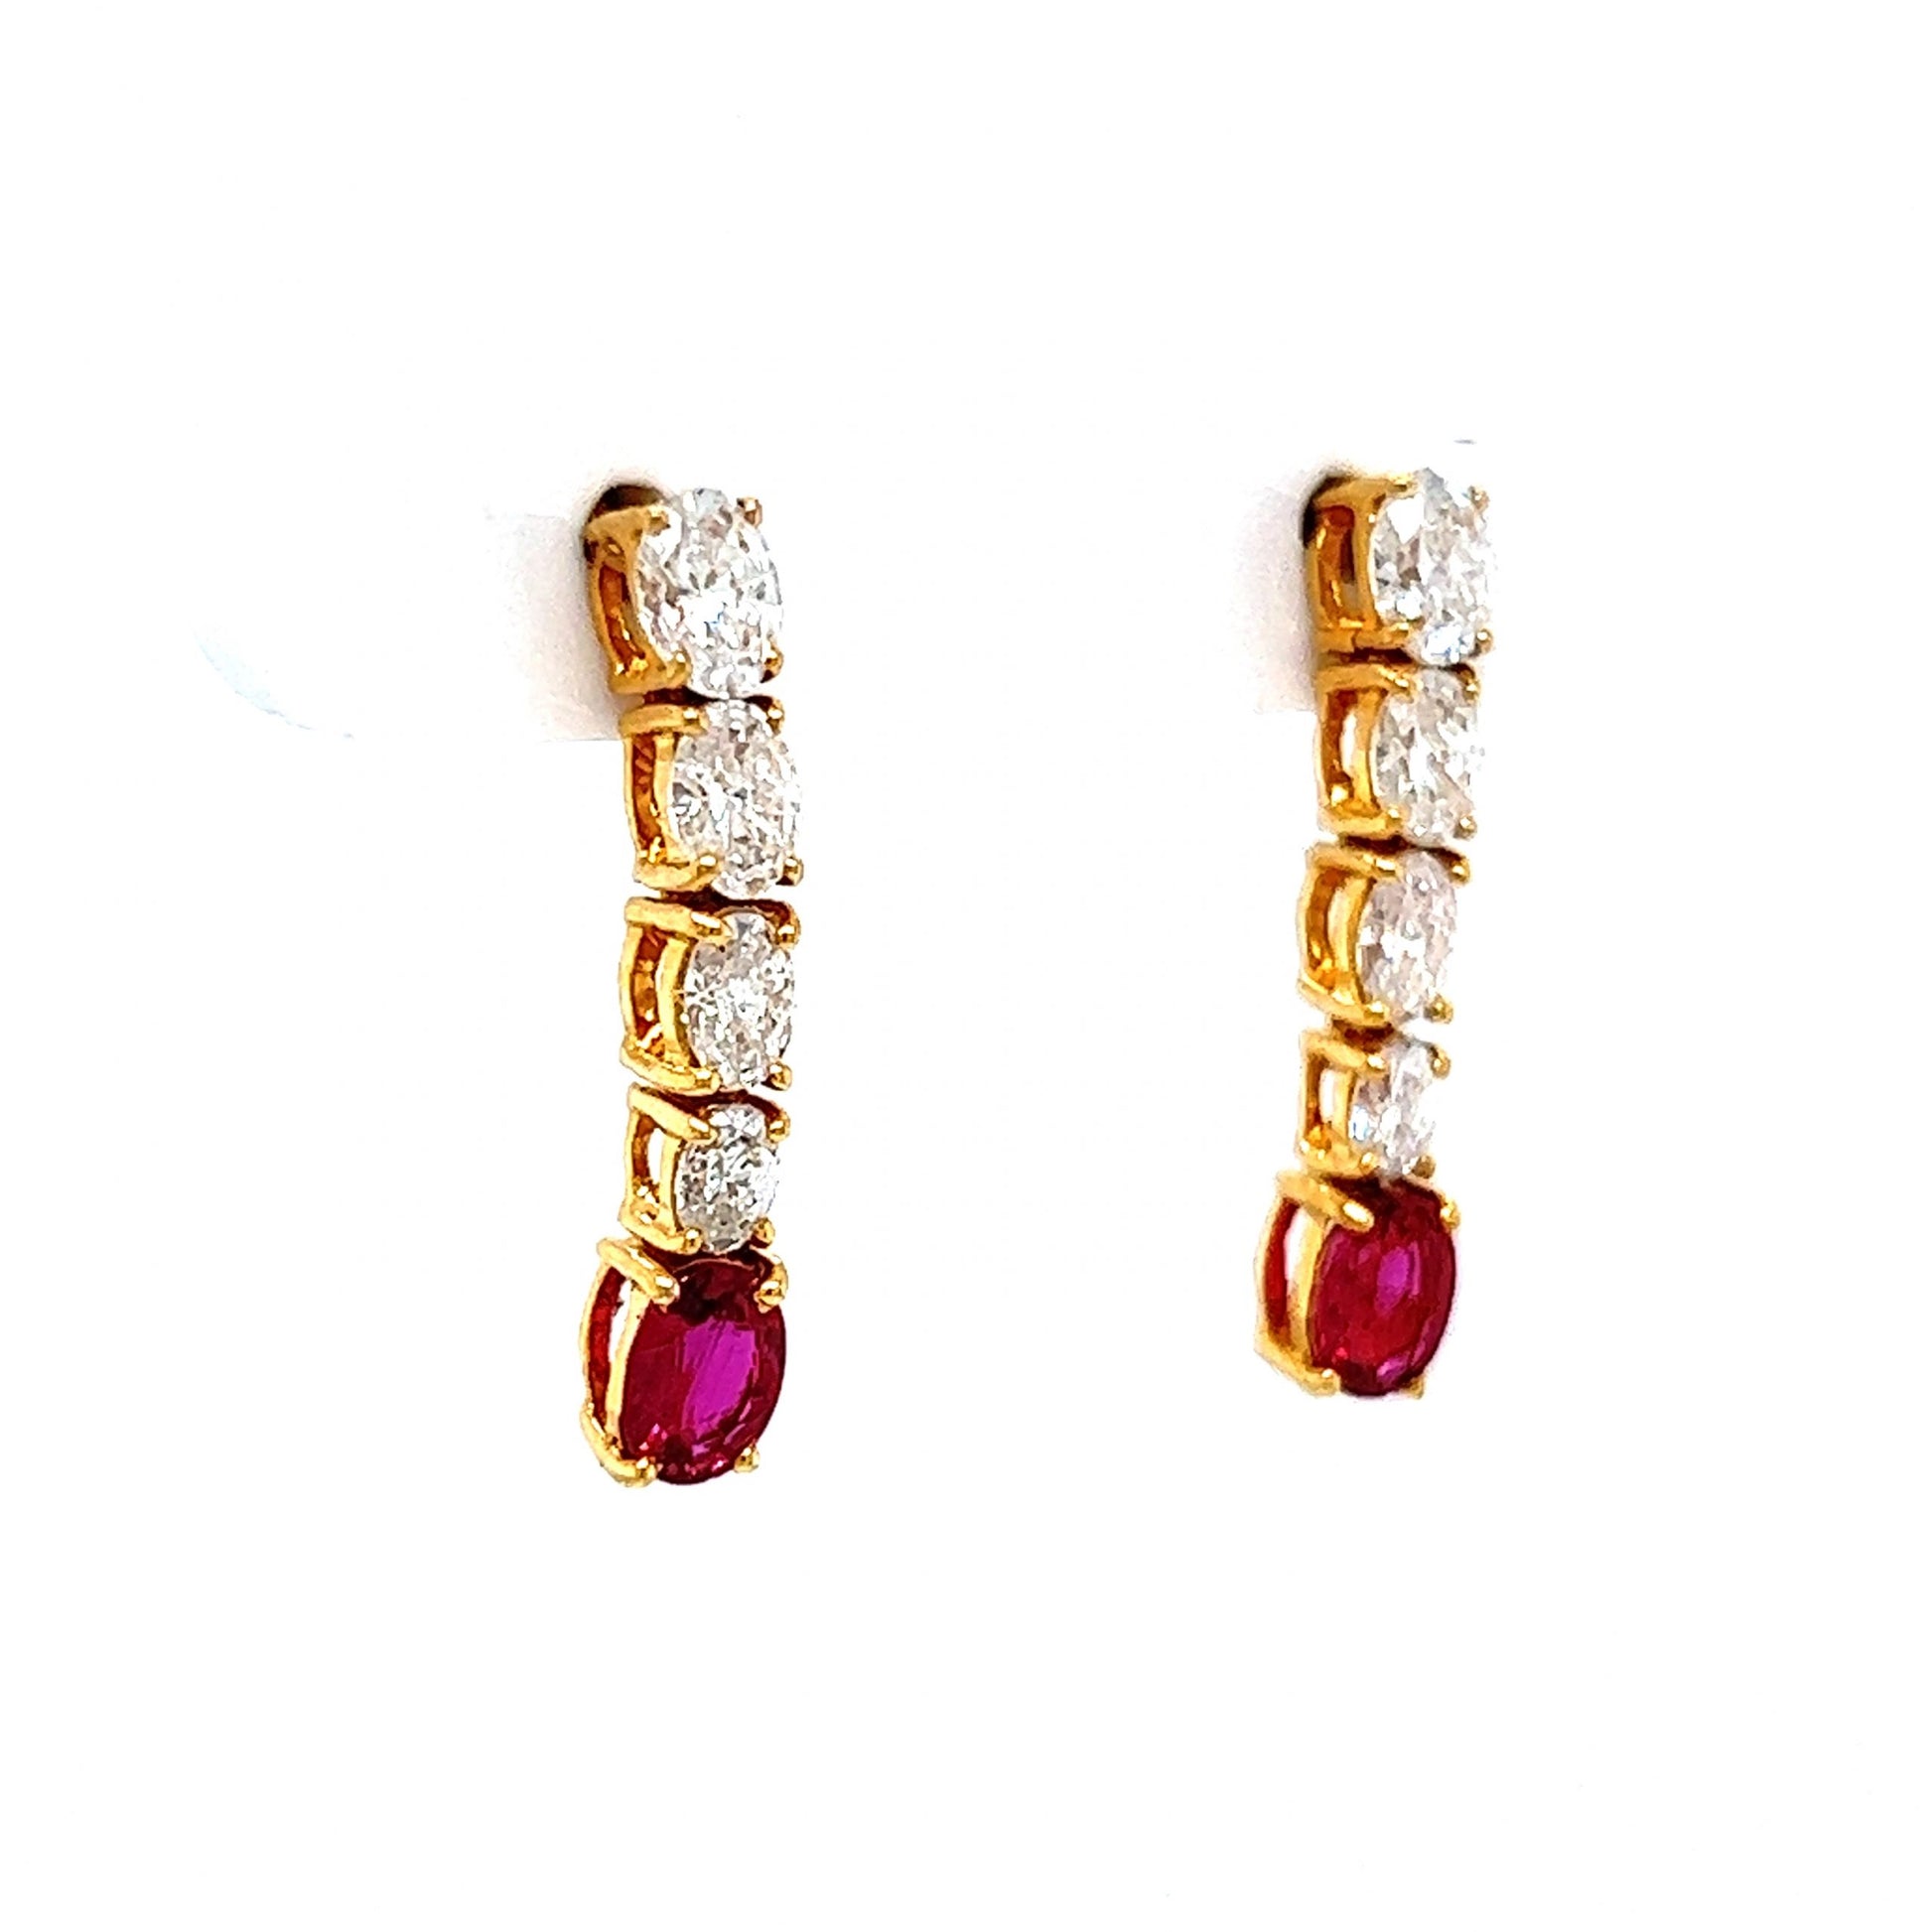 Oval Cut Diamond & Ruby Drop Earrings in 18k Yellow Gold